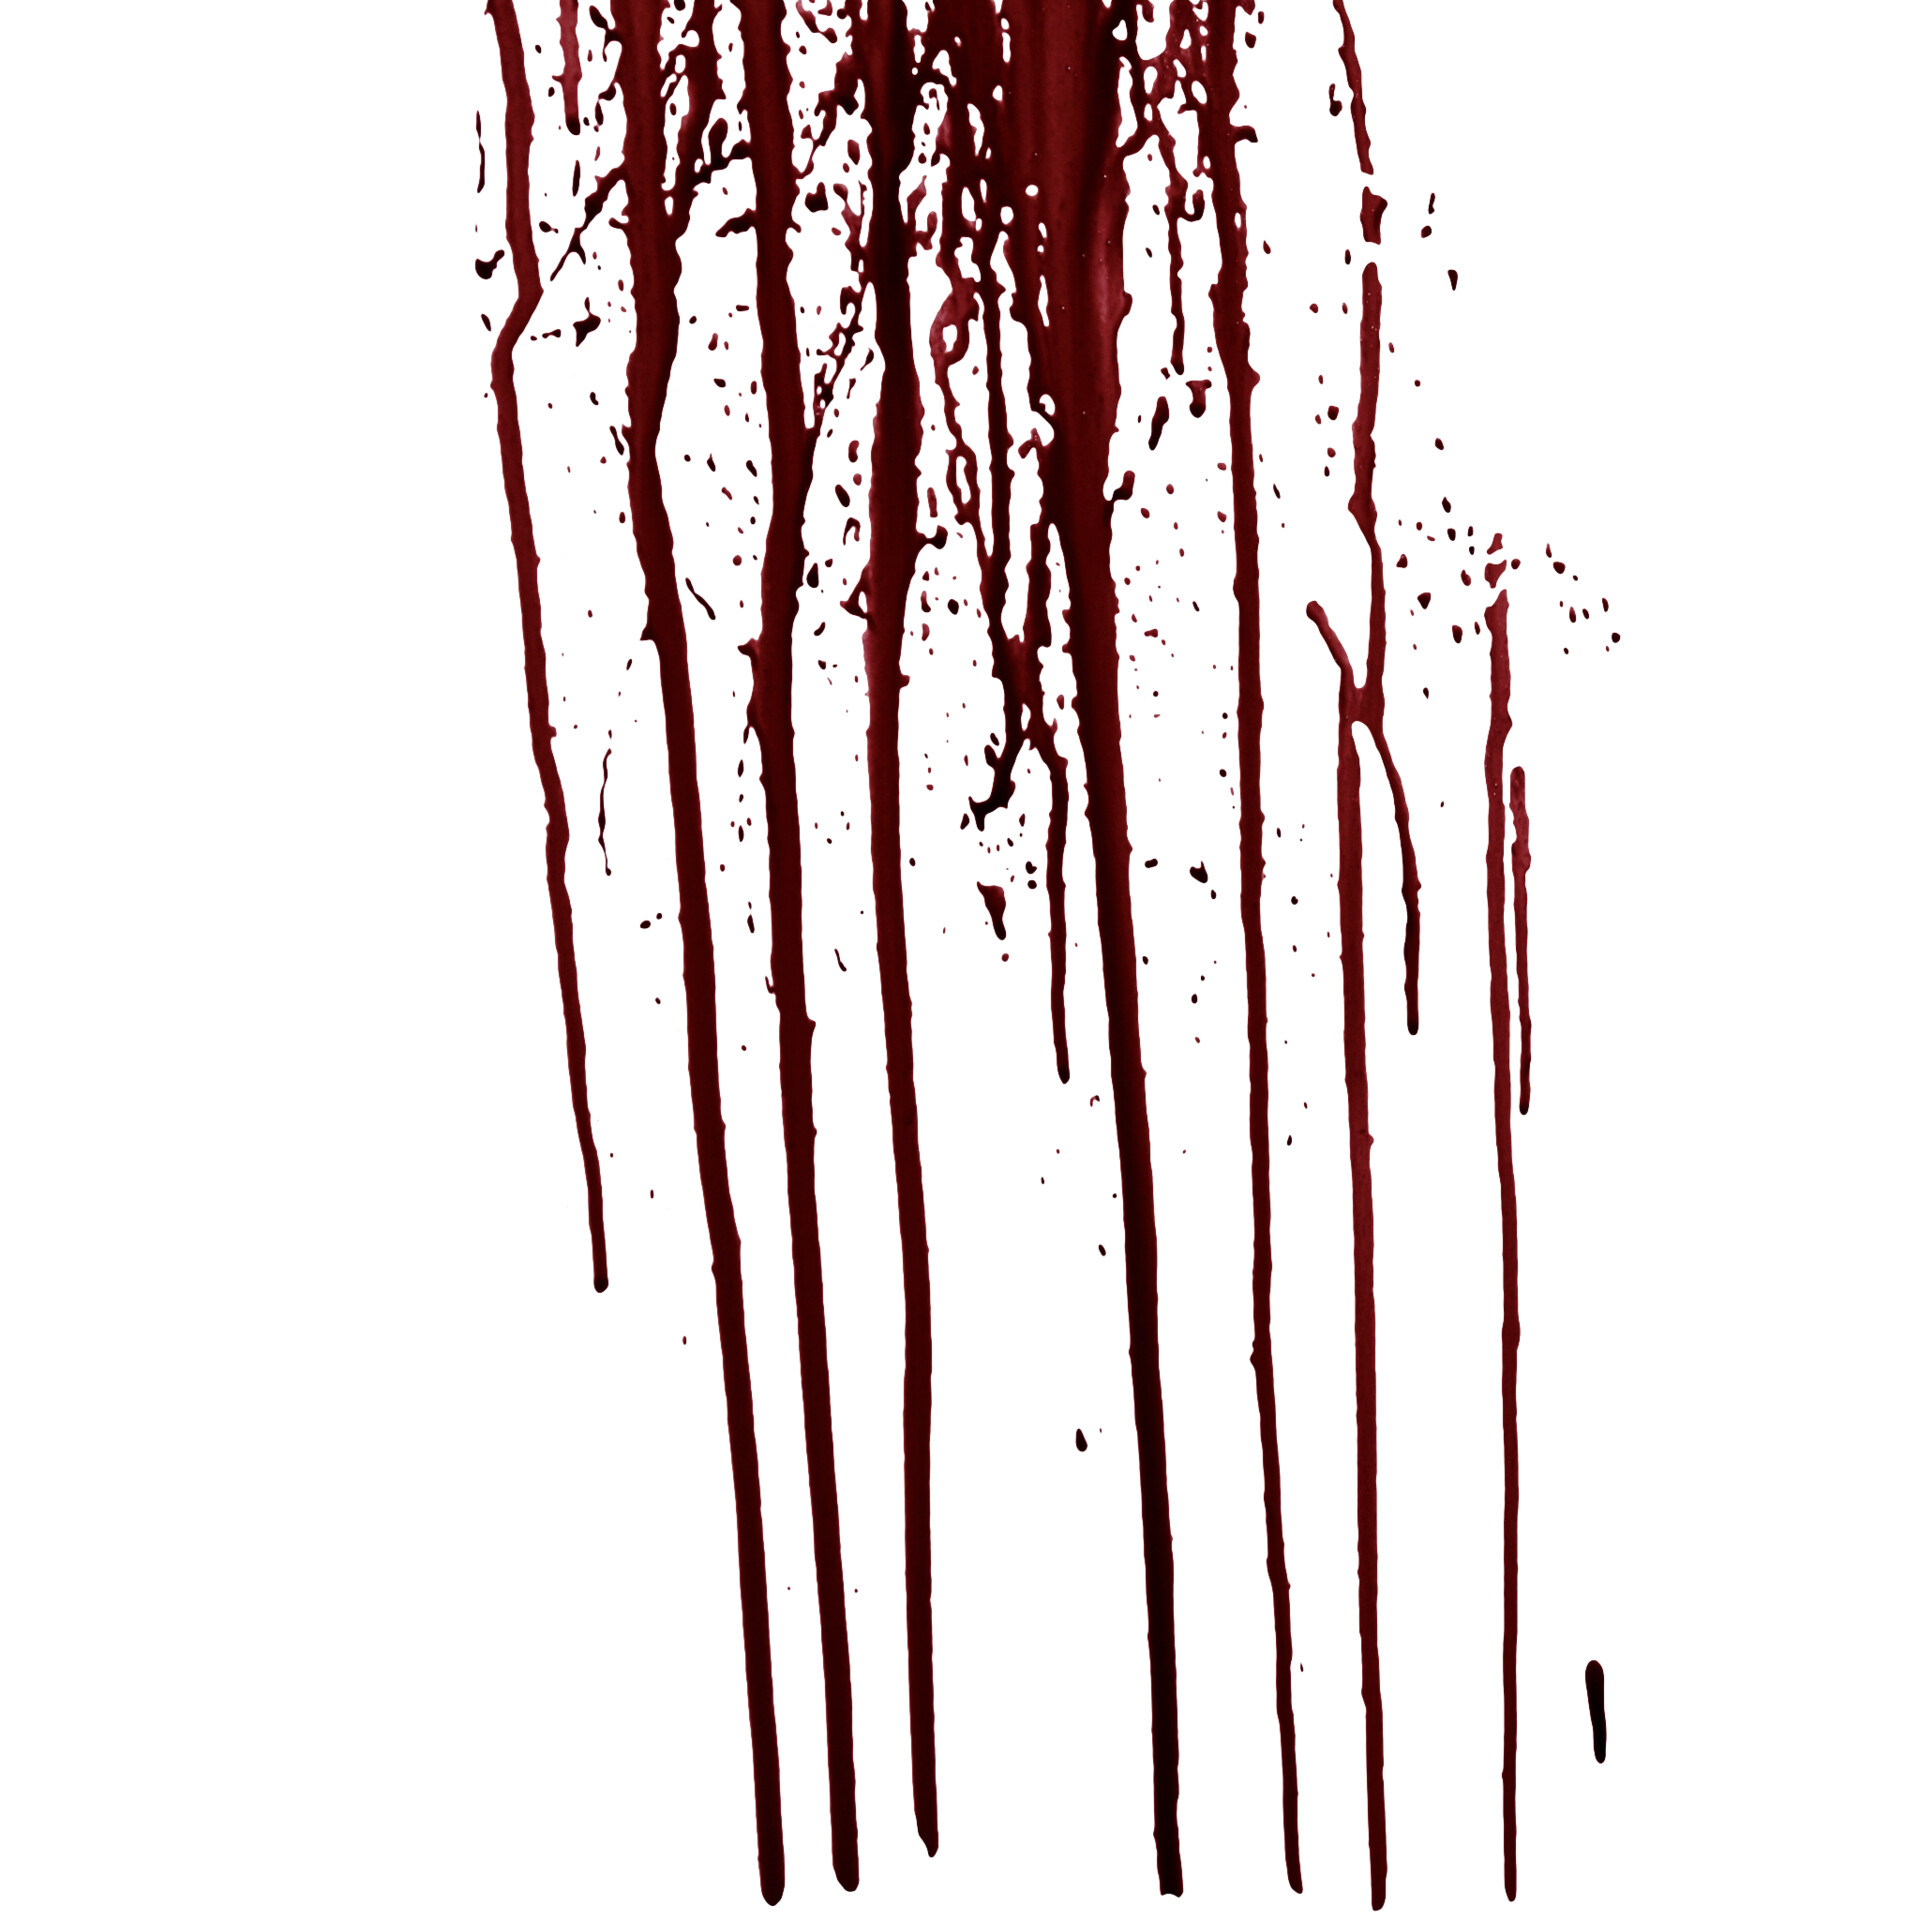 Blood Drip PNG Image, Blood Splashing And Dripping Realism, Blood